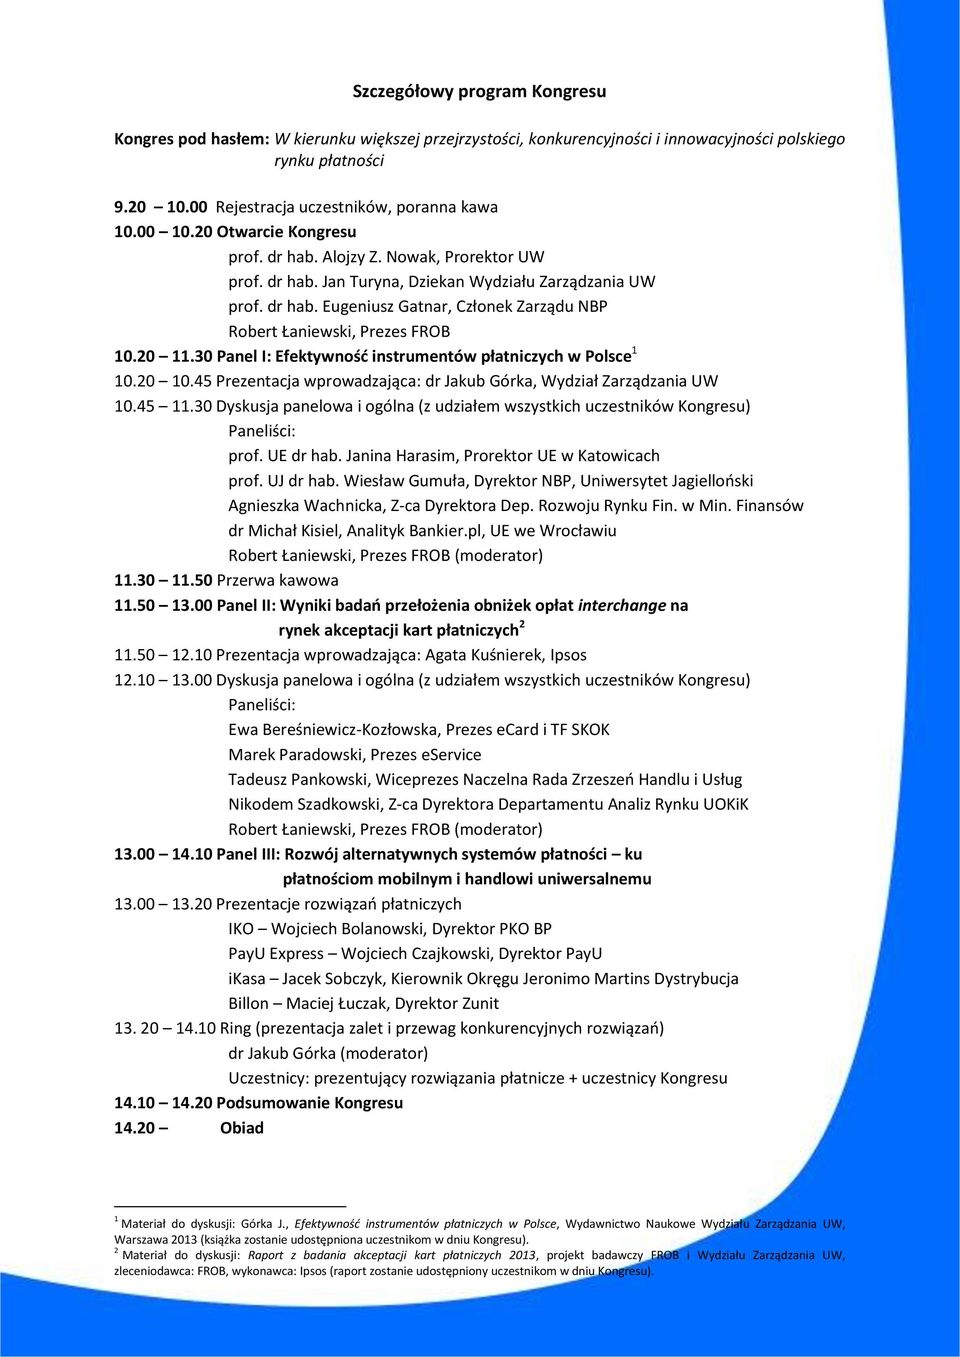 20 11.30 Panel I: Efektywność instrumentów płatniczych w Polsce 1 10.20 10.45 Prezentacja wprowadzająca: dr Jakub Górka, Wydział Zarządzania UW 10.45 11.